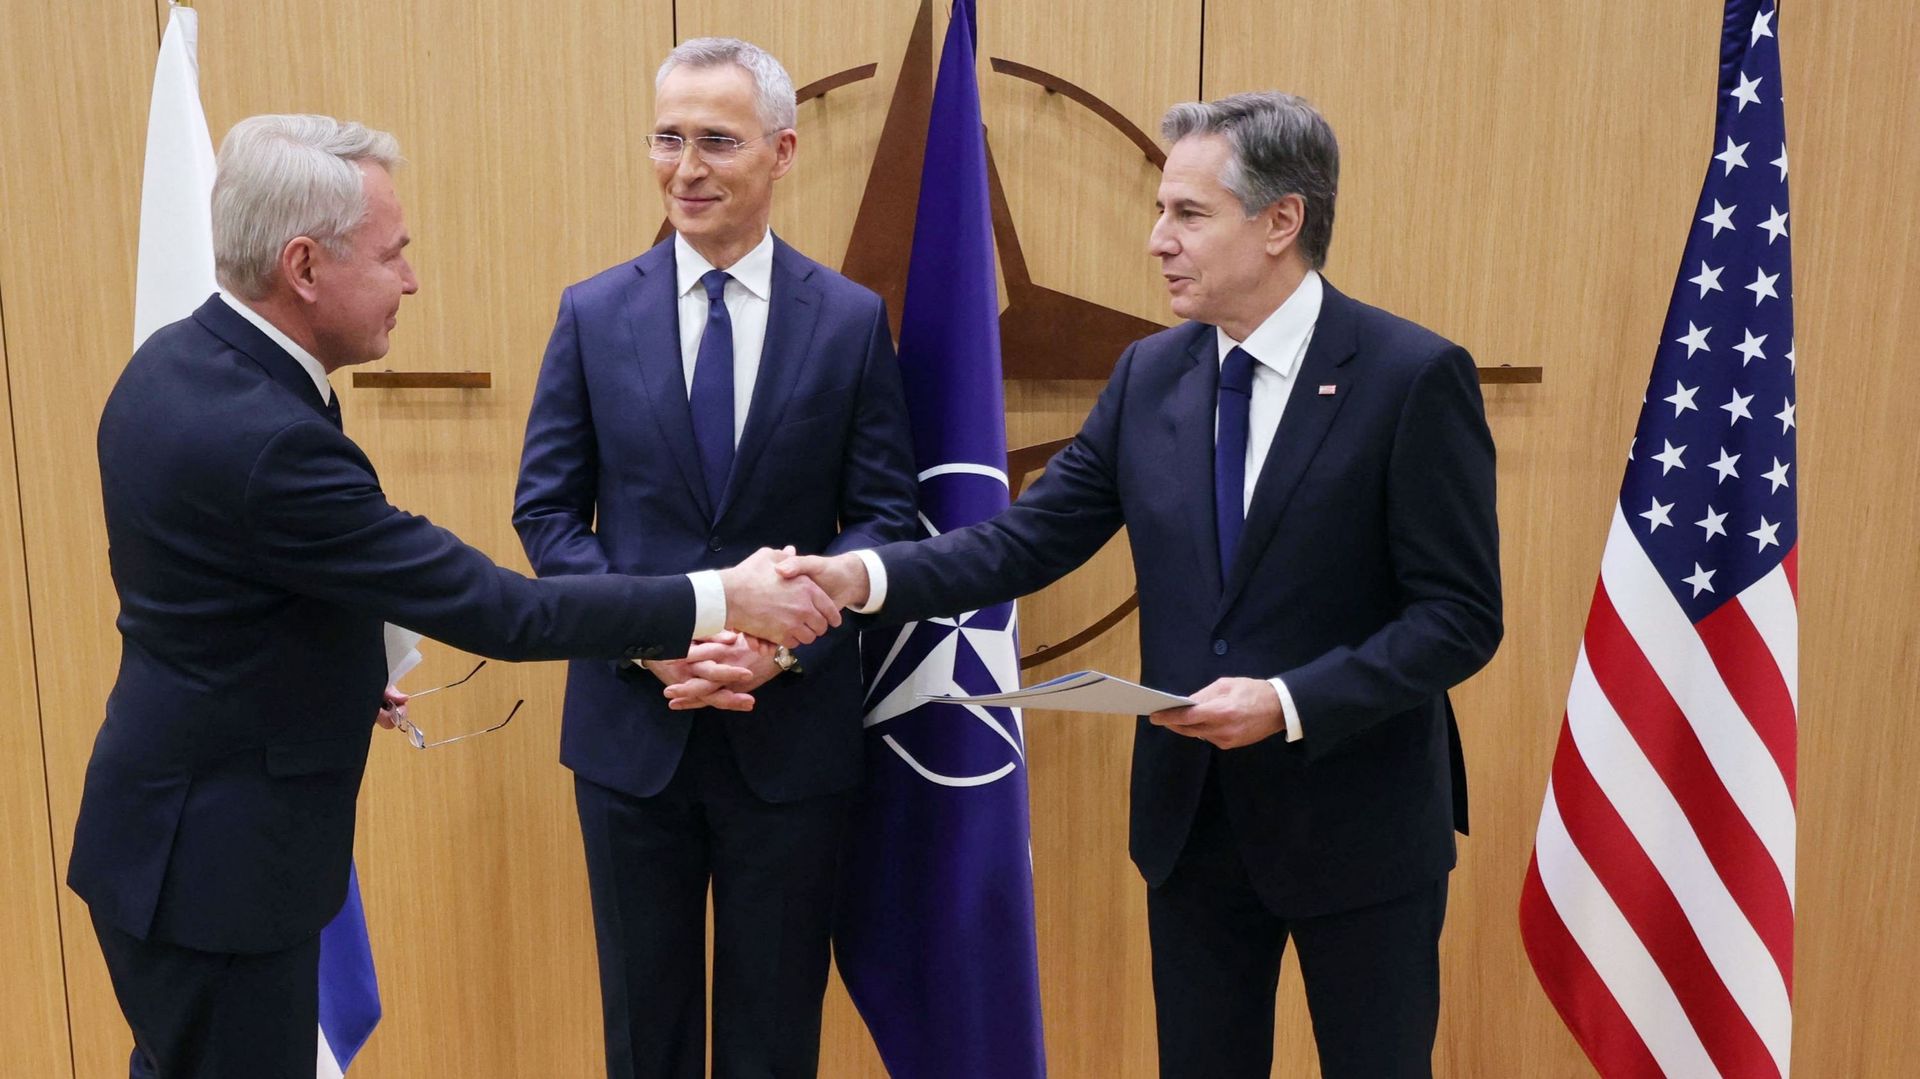 Le ministre finlandais des Affaires étrangères Pekka Haavisto (G) serre la main du secrétaire d'État américain Antony Blinken, entouré du secrétaire général de l'OTAN Jens Stoltenberg (C) qui lui remet les documents d'adhésion de la Finlande à l'OTAN.